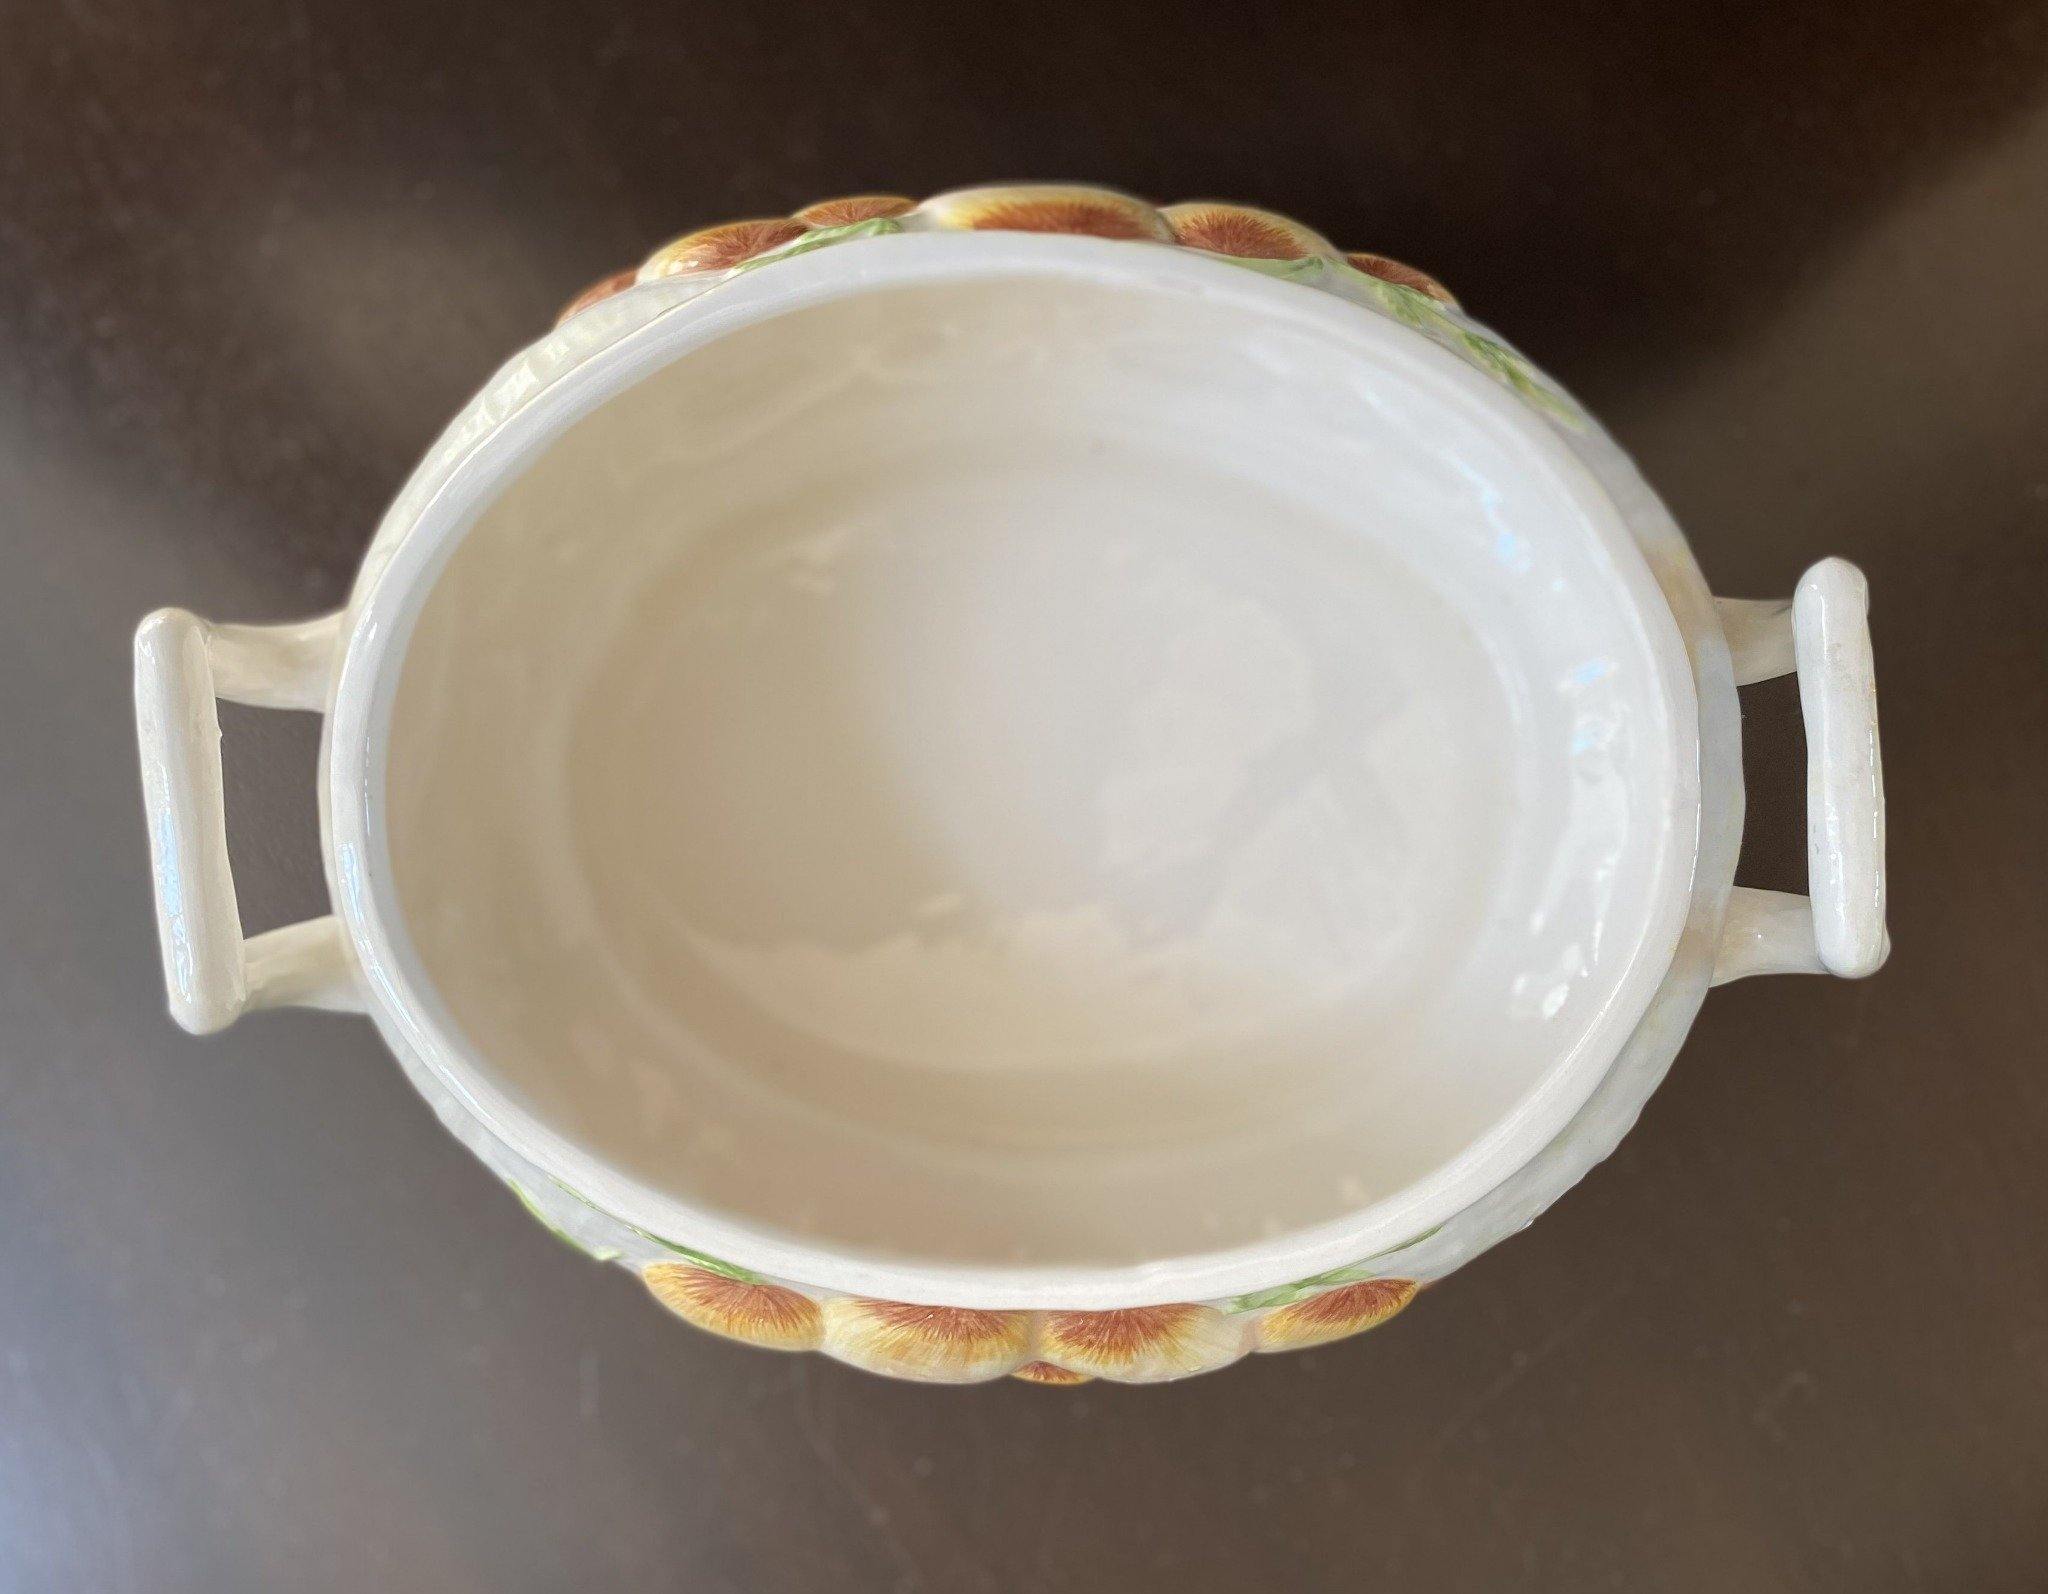 Birdseye view of interior white ceramic casserole dish- Cook Street Vintage